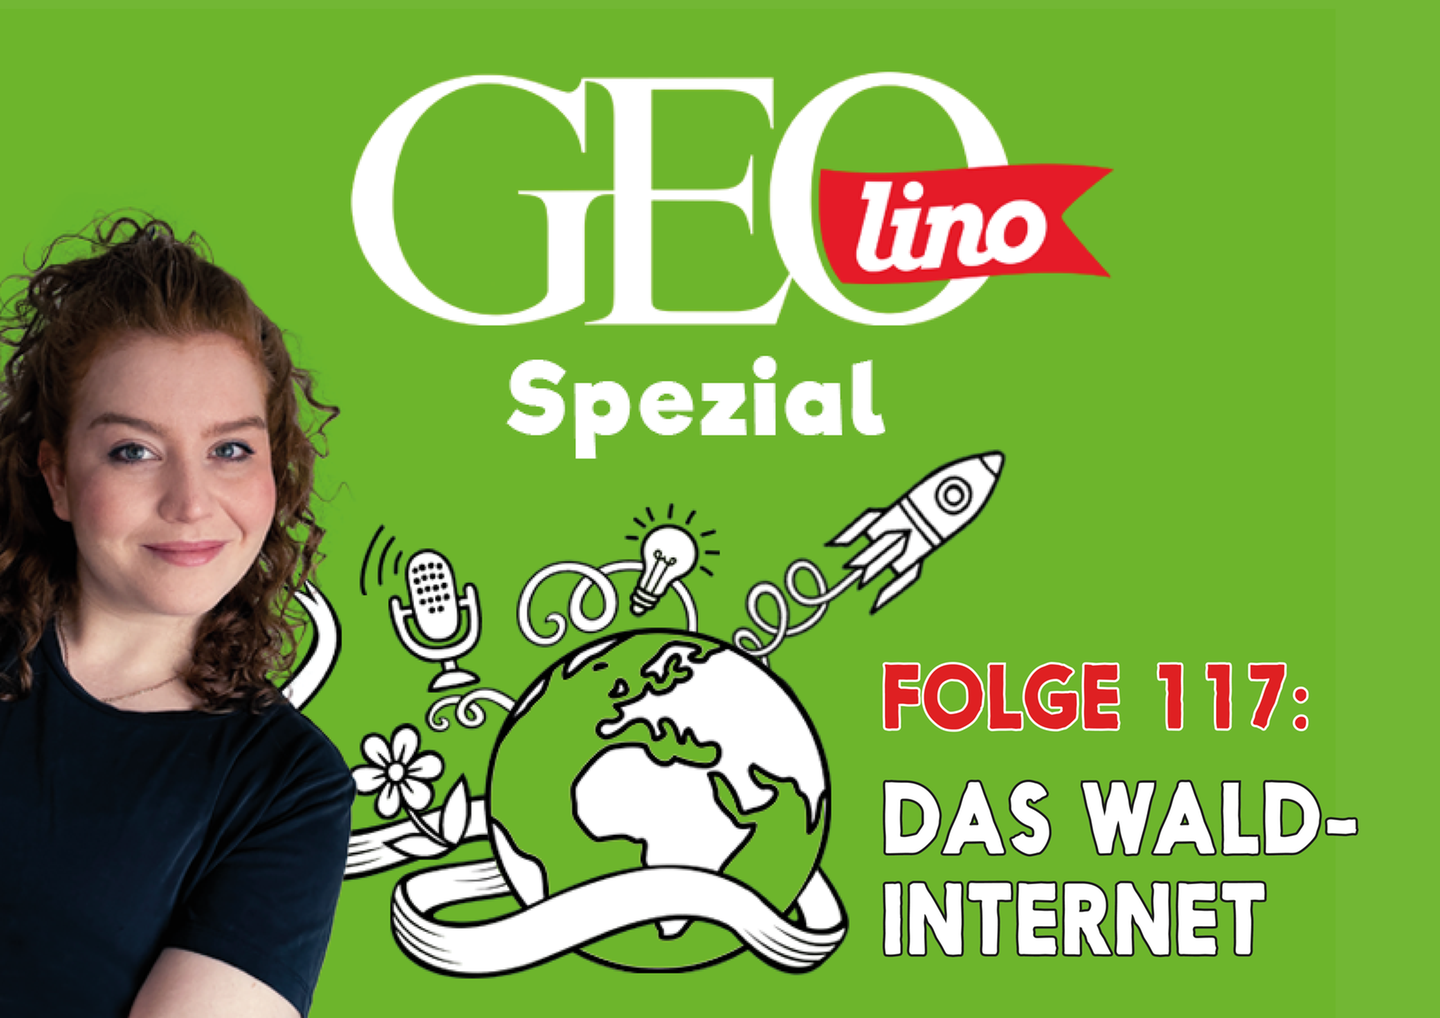 In Folge 117 unseres GEOlino-Podcasts geht es um das Wald-Internet